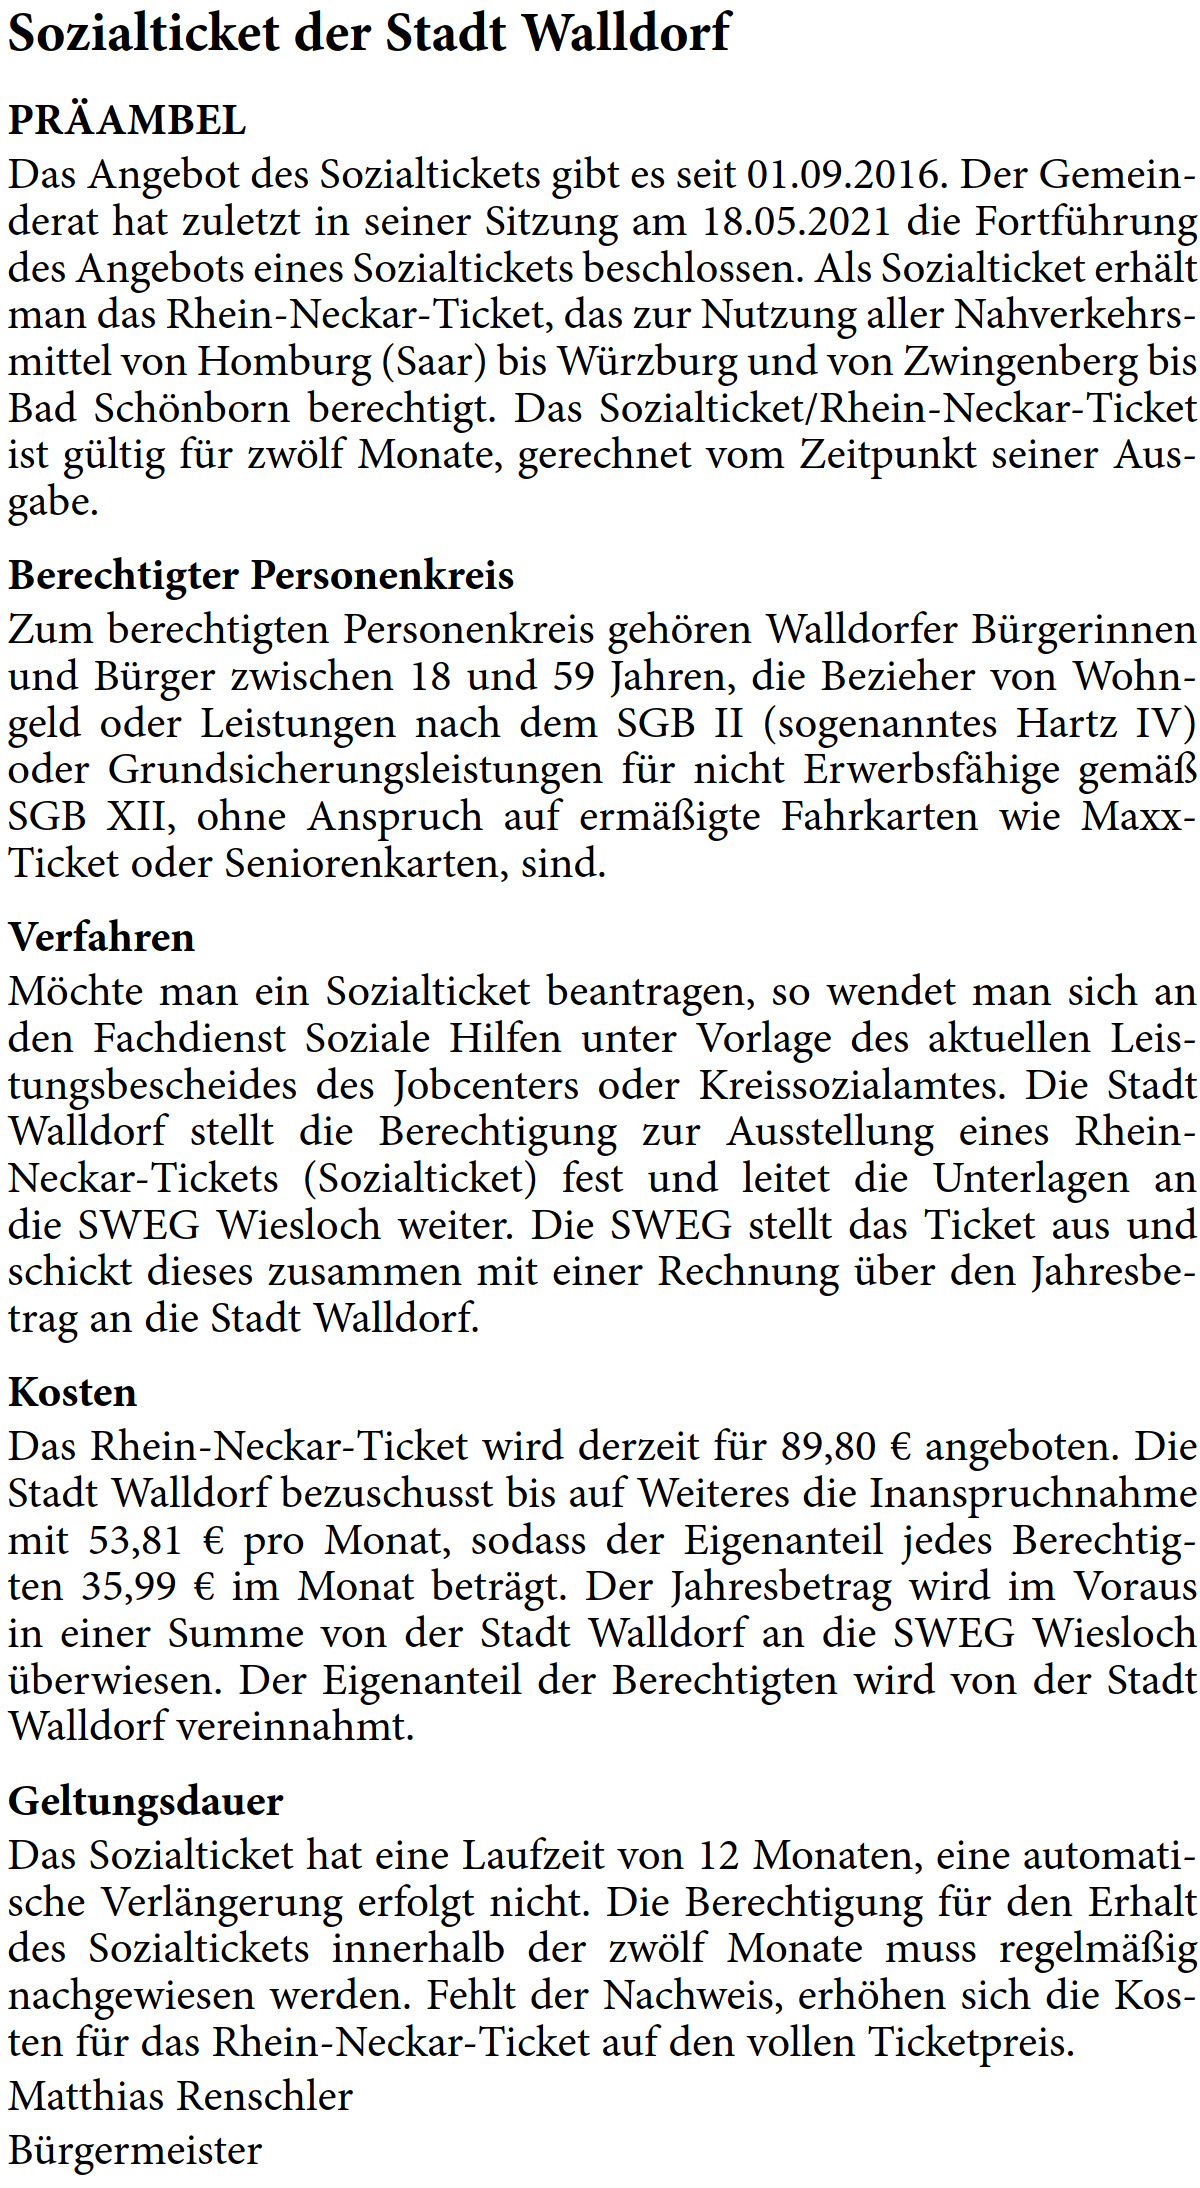 PRÄAMBEL Das Angebot des Sozialtickets gibt es seit 01.09.2016. Der Gemein- derat hat zuletzt in seiner Sitzung am 18.05.2021 die Fortführung  des Angebots eines Sozialtickets beschlossen. Als Sozialticket erhält  man das Rhein-Neckar-Ticket, das zur Nutzung aller Nahverkehrs- mittel von Homburg (Saar) bis Würzburg und von Zwingenberg bis  Bad Schönborn berechtigt. Das Sozialticket/Rhein-Neckar-Ticket  ist gültig für zwölf Monate, gerechnet vom Zeitpunkt seiner Aus- gabe. Berechtigter Personenkreis Zum berechtigten Personenkreis gehören Walldorfer Bürgerinnen  und Bürger zwischen 18 und 59 Jahren, die Bezieher von Wohn- geld oder Leistungen nach dem SGB II (sogenanntes Hartz IV)  oder Grundsicherungsleistungen für nicht Erwerbsfähige gemäß  SGB XII, ohne Anspruch auf ermäßigte Fahrkarten wie Maxx- Ticket oder Seniorenkarten, sind.  Verfahren Möchte man ein Sozialticket beantragen, so wendet man sich an  den Fachdienst Soziale Hilfen unter Vorlage des aktuellen Leis- tungsbescheides des Jobcenters oder Kreissozialamtes. Die Stadt  Walldorf stellt die Berechtigung zur Ausstellung eines Rhein- Neckar-Tickets (Sozialticket) fest und leitet die Unterlagen an  die SWEG Wiesloch weiter. Die SWEG stellt das Ticket aus und  schickt dieses zusammen mit einer Rechnung über den Jahresbe- trag an die Stadt Walldorf. Kosten Das Rhein-Neckar-Ticket wird derzeit für 89,80 € angeboten. Die  Stadt Walldorf bezuschusst bis auf Weiteres die Inanspruchnahme  mit 53,81 € pro Monat, sodass der Eigenanteil jedes Berechtig- ten 35,99 € im Monat beträgt. Der Jahresbetrag wird im Voraus  in einer Summe von der Stadt Walldorf an die SWEG Wiesloch  überwiesen. Der Eigenanteil der Berechtigten wird von der Stadt  Walldorf vereinnahmt. Geltungsdauer Das Sozialticket hat eine Laufzeit von 12 Monaten, eine automati- sche Verlängerung erfolgt nicht. Die Berechtigung für den Erhalt  des Sozialtickets innerhalb der zwölf Monate muss regelmäßig  nachgewiesen werden. Fehlt der Nachweis, erhöhen sich die Kos- ten für das Rhein-Neckar-Ticket auf den vollen Ticketpreis. Matthias Renschler Bürgermeister